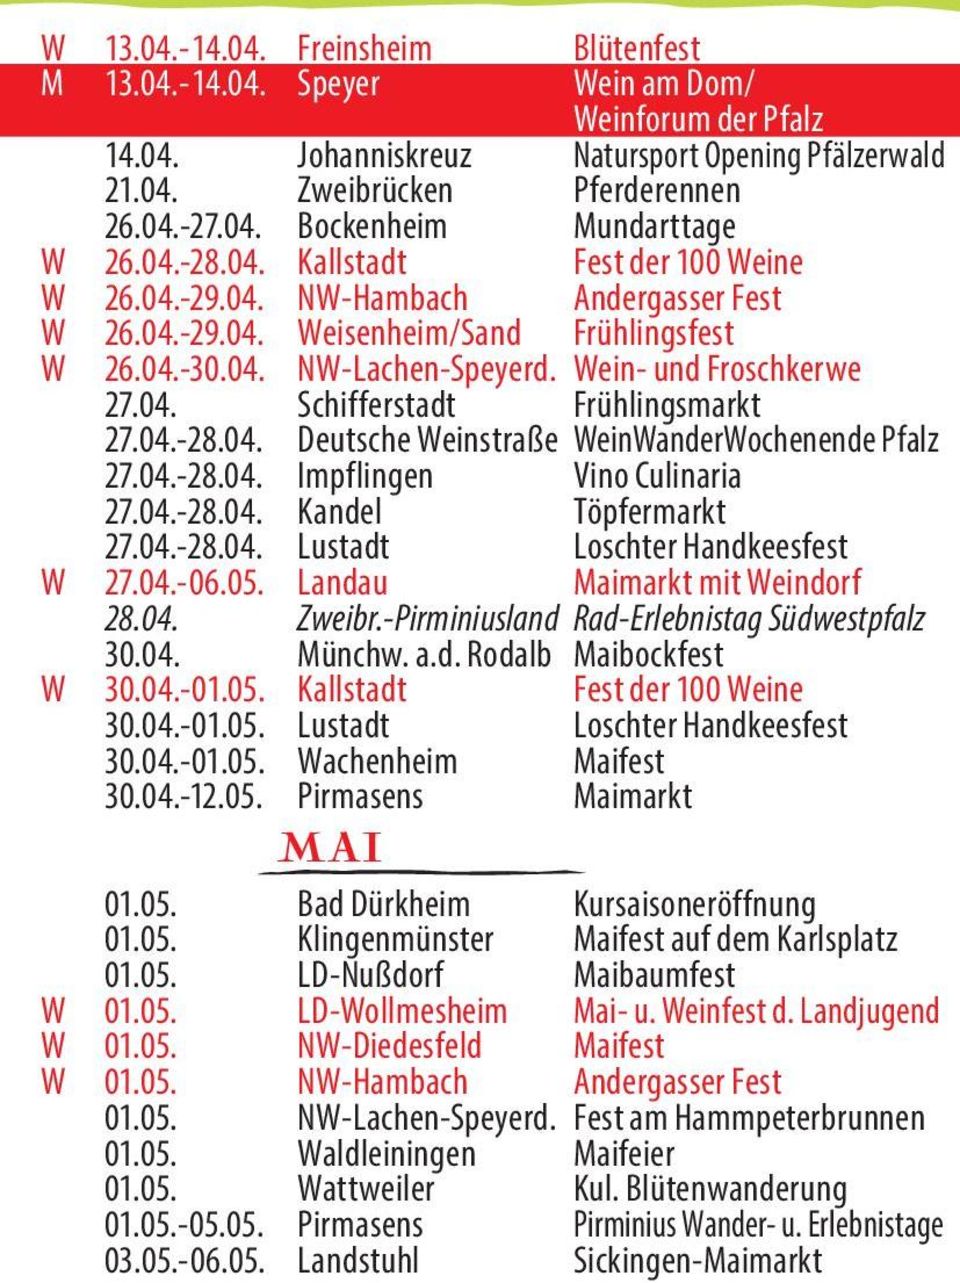 04.-28.04. Deutsche Weinstraße WeinWanderWochenende Pfalz 27.04.-28.04. Impflingen Vino Culinaria 27.04.-28.04. Kandel Töpfermarkt 27.04.-28.04. Lustadt Loschter Handkeesfest W 27.04.-06.05.